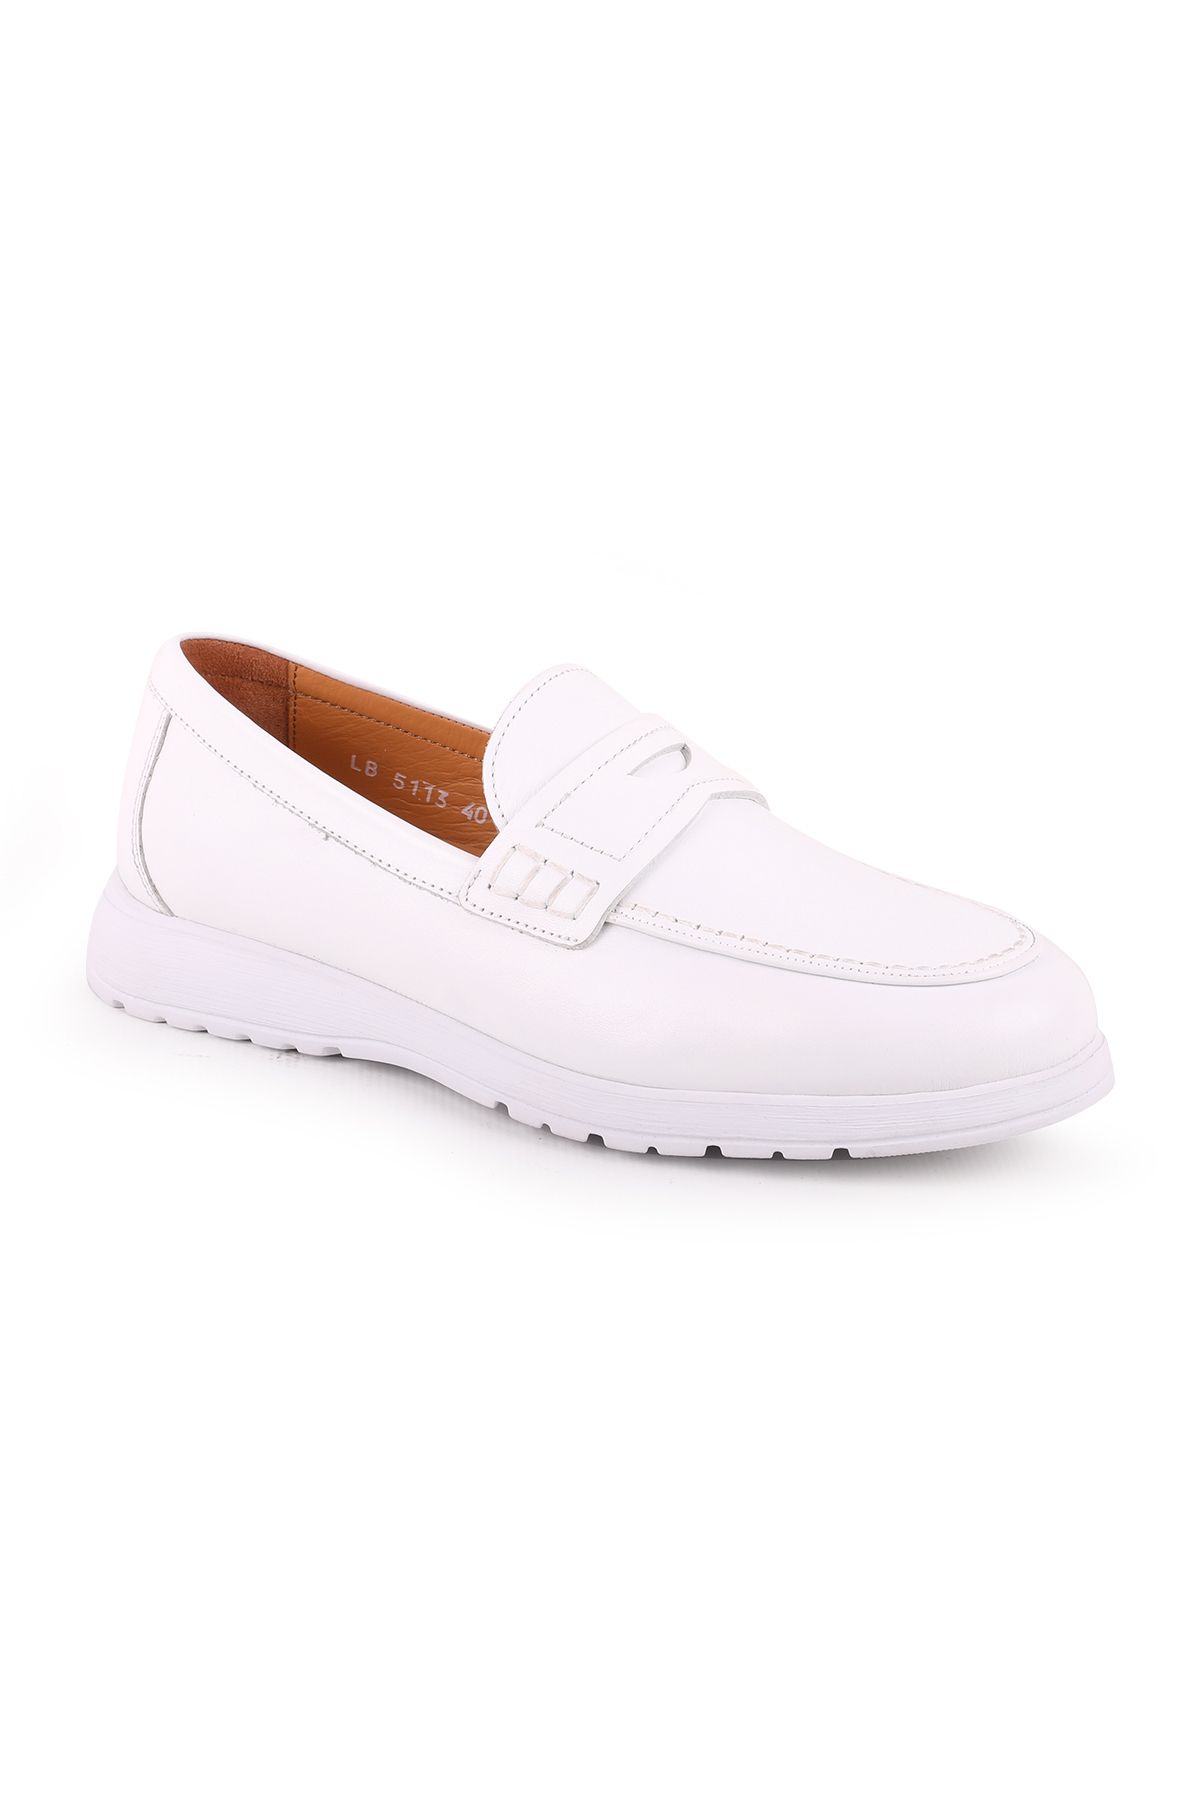 Libero L5113 Deri Erkek Casual Ayakkabı Beyaz